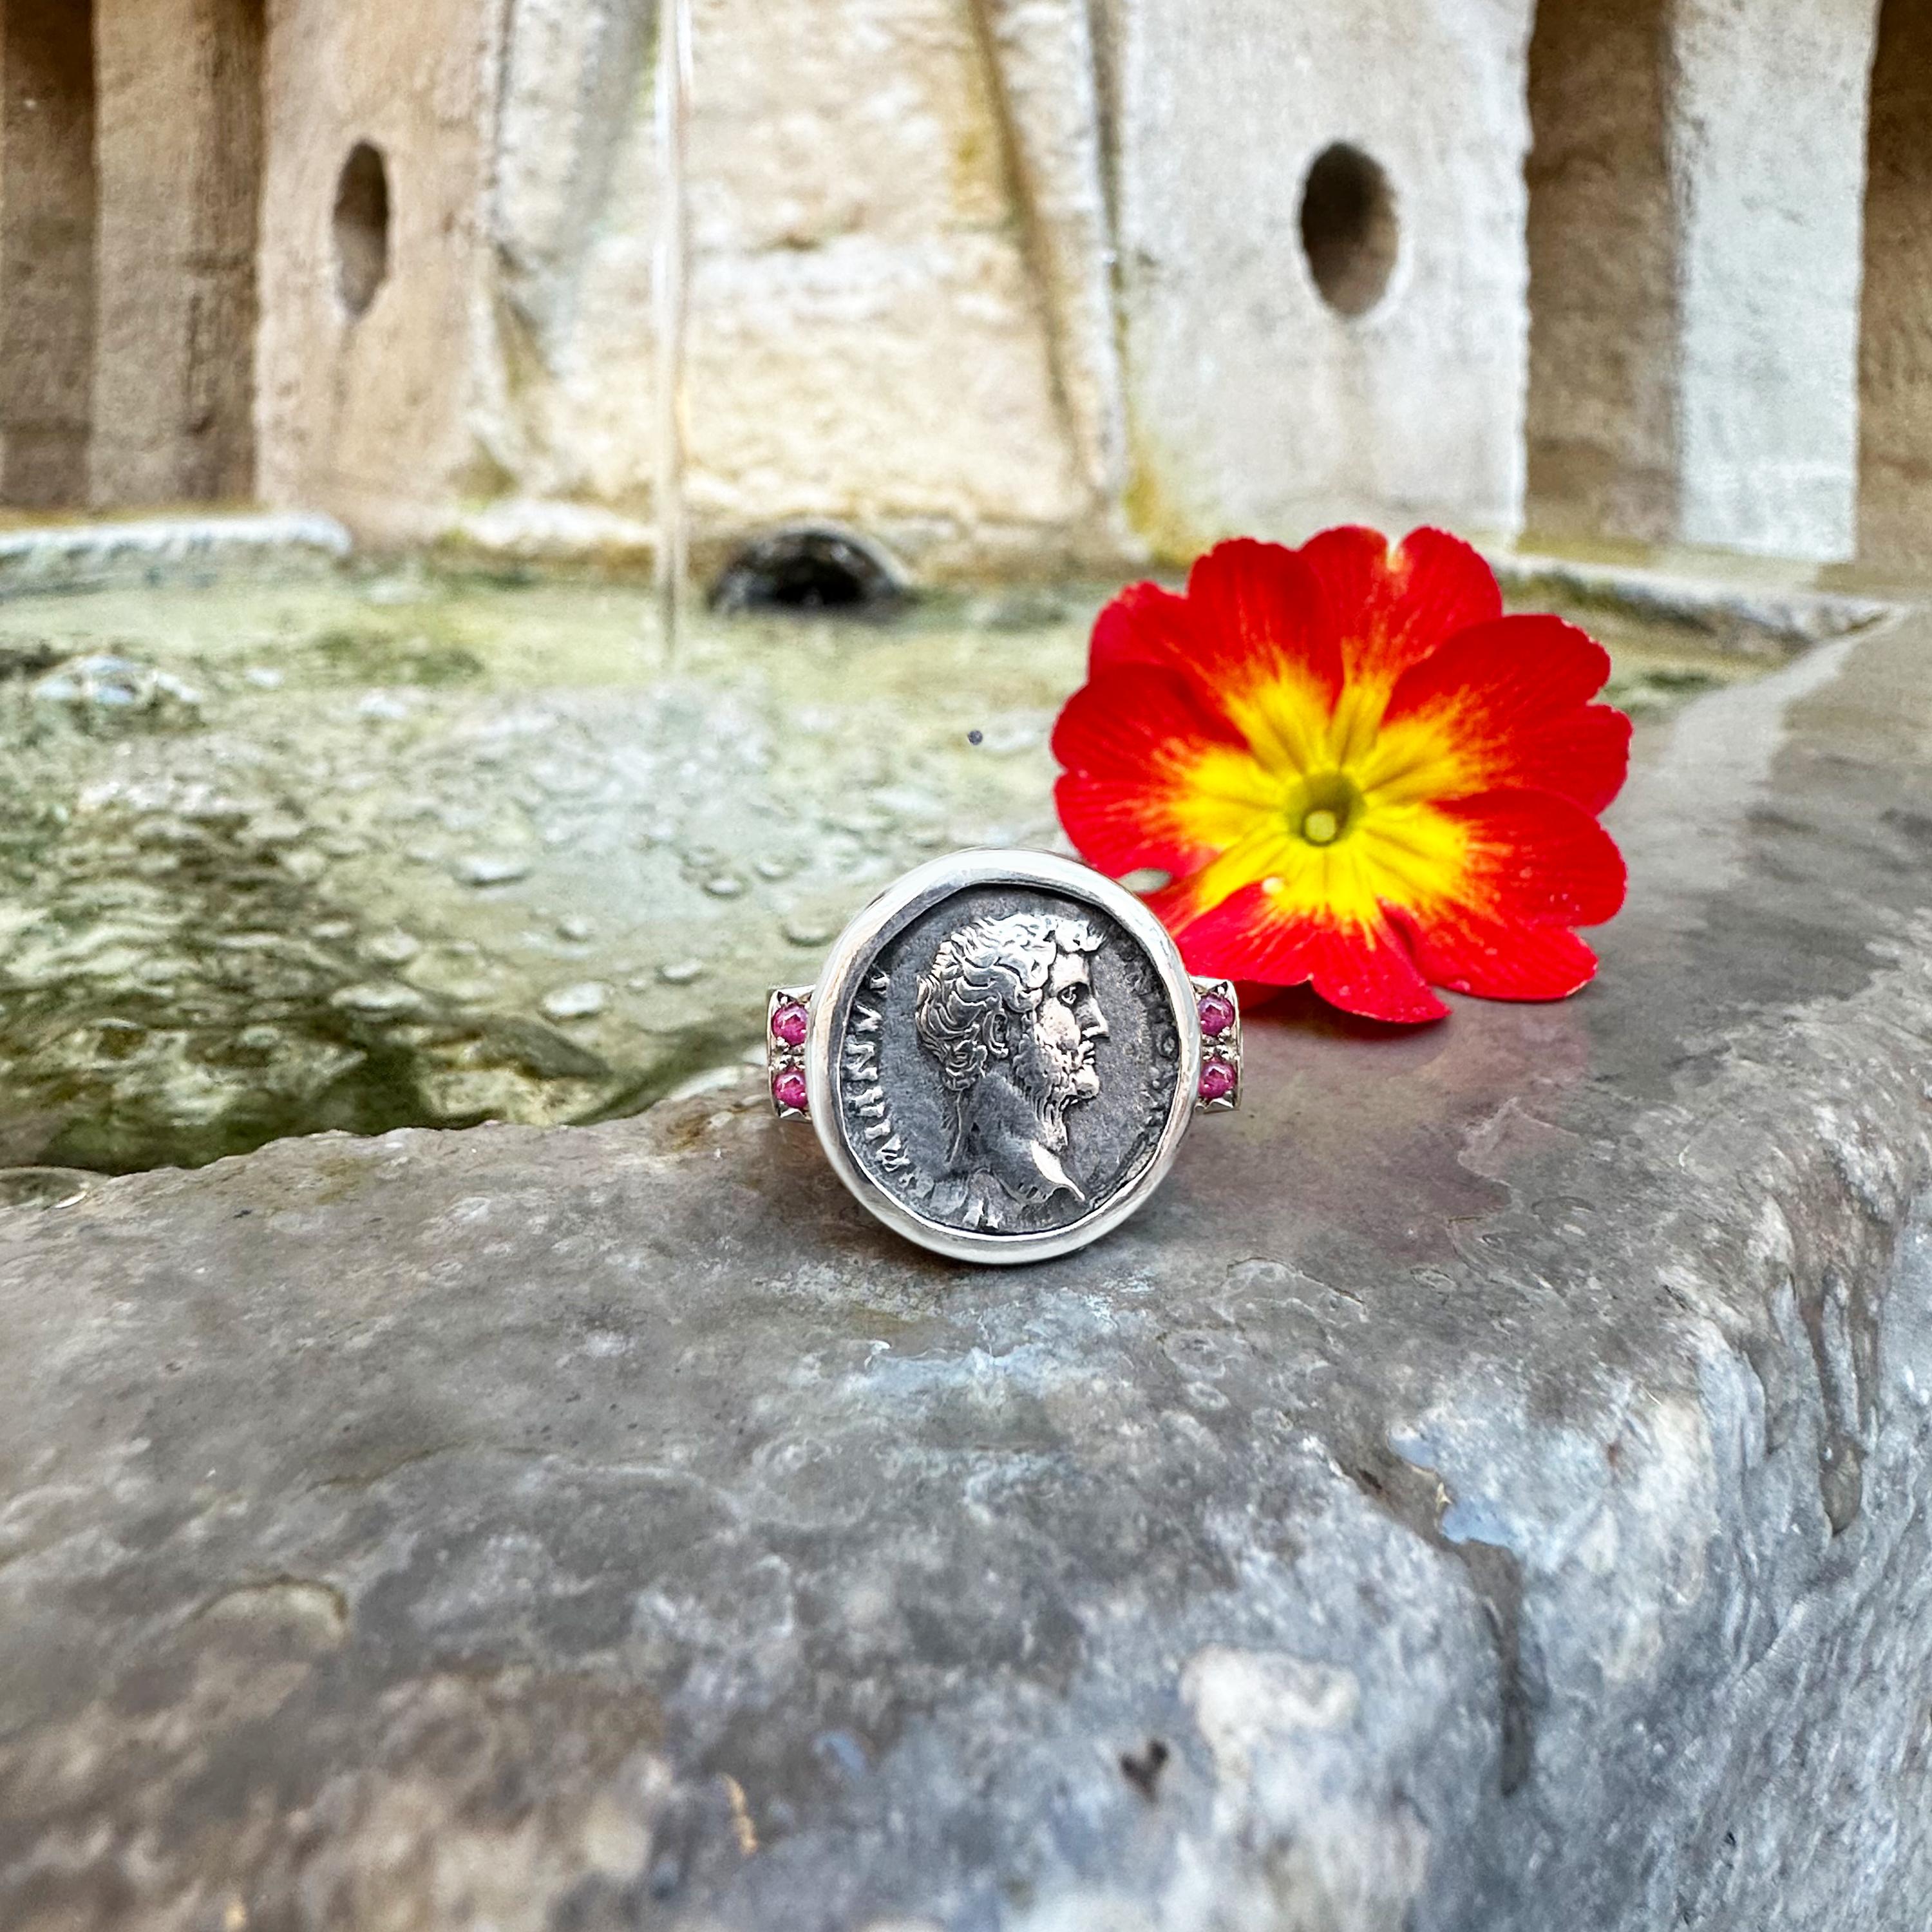 Contempla este exquisito anillo de plata de ley adornado con cuatro delicados rubíes. En su interior se esconde un verdadero tesoro: una auténtica moneda romana con la majestuosa efigie del emperador Adriano. Conocido por sus ilustres viajes, sus